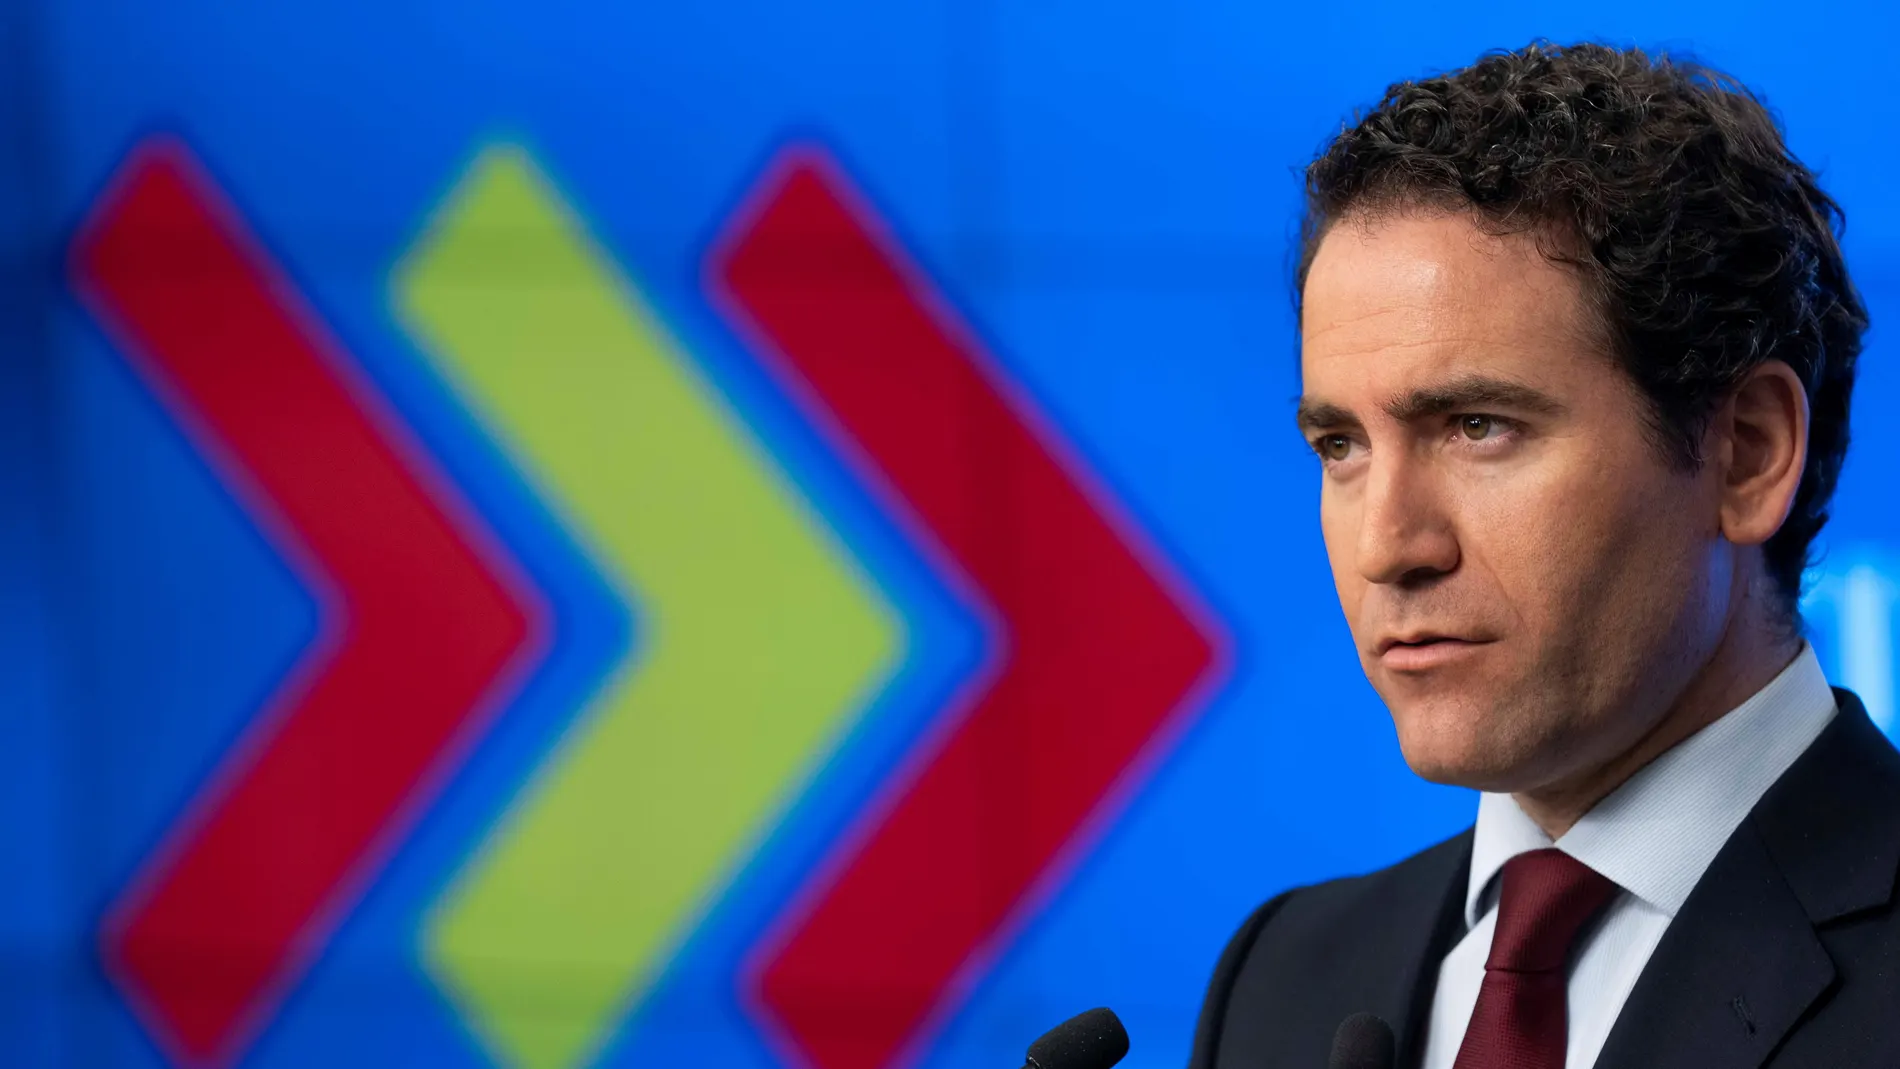 PP cree que Sánchez "negocia" con salud de españoles para mantener Gobierno